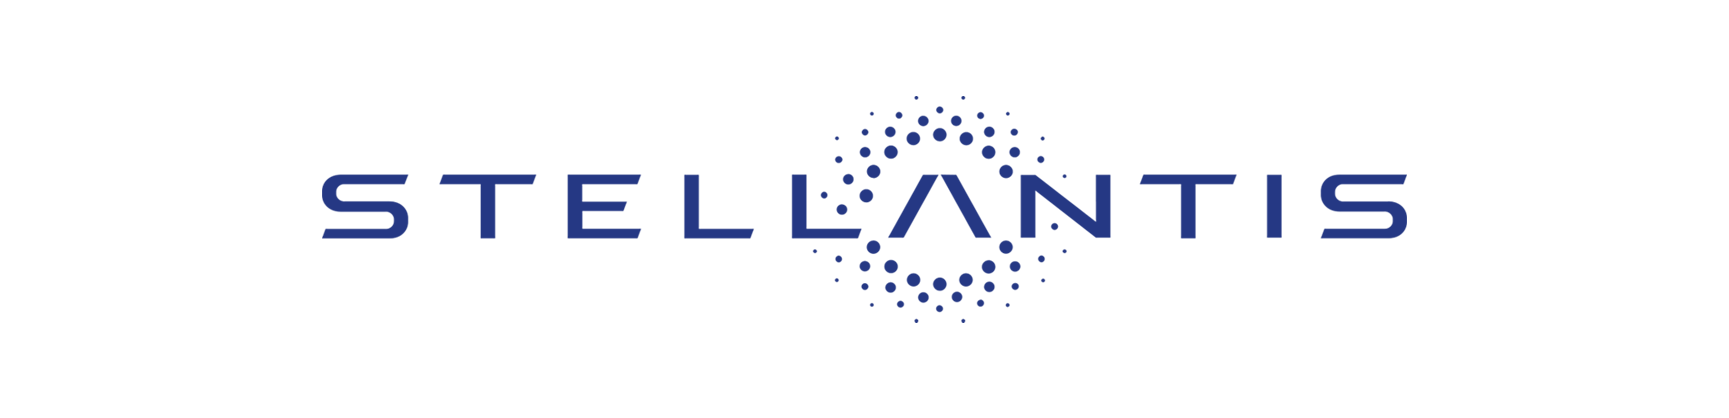 Image de Stellantis logo